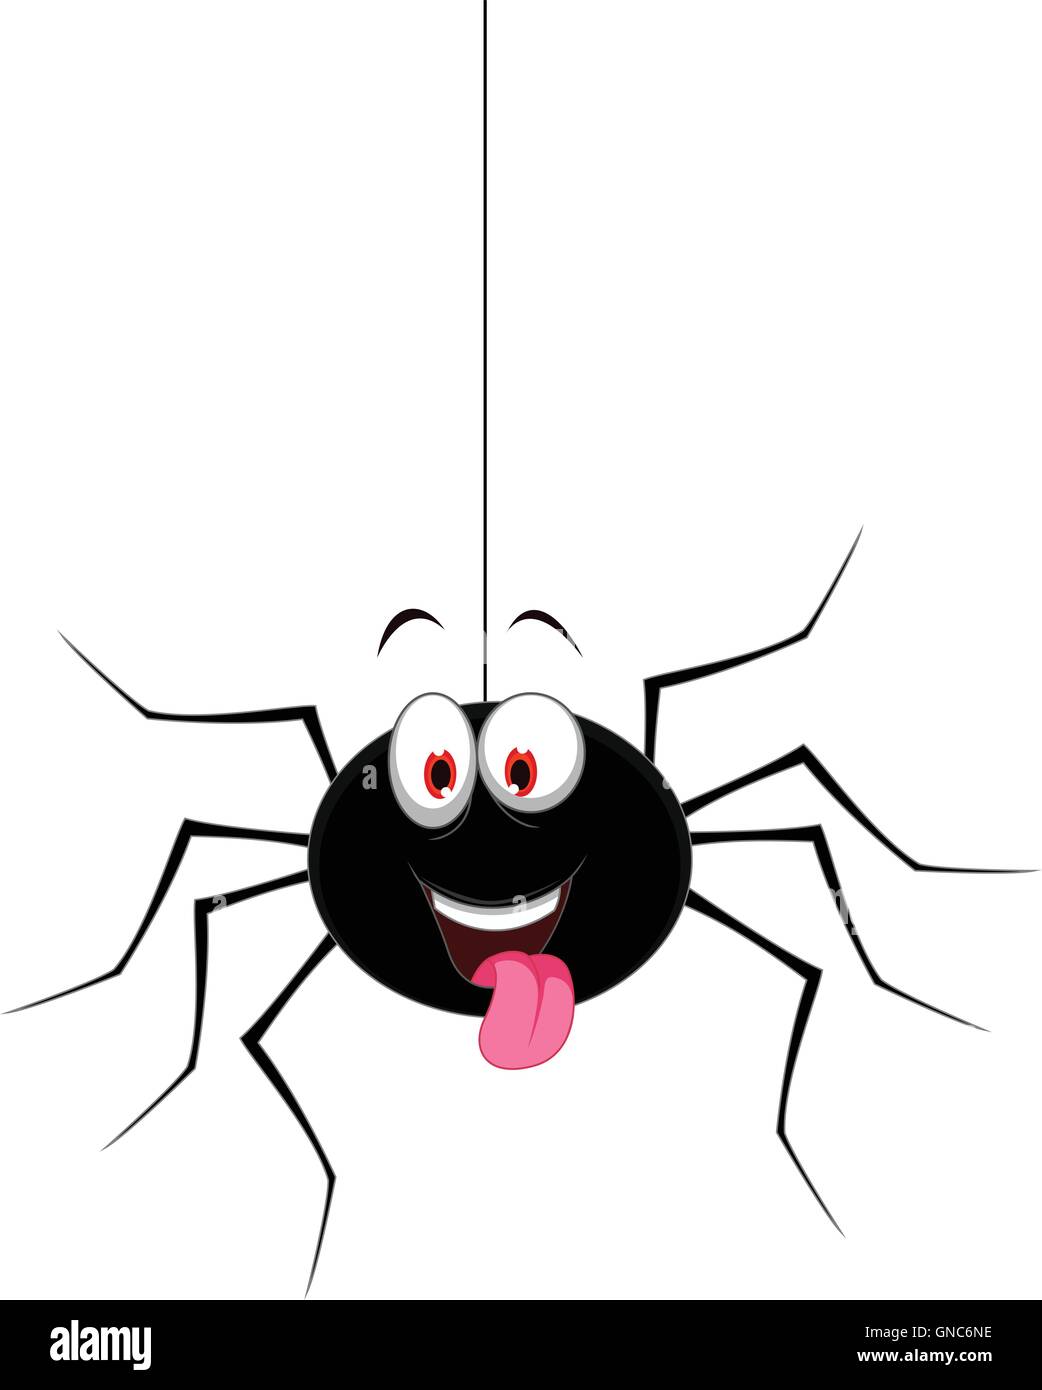 niedliche Spinne Cartoon für Sie design Stock-Vektorgrafik - Alamy